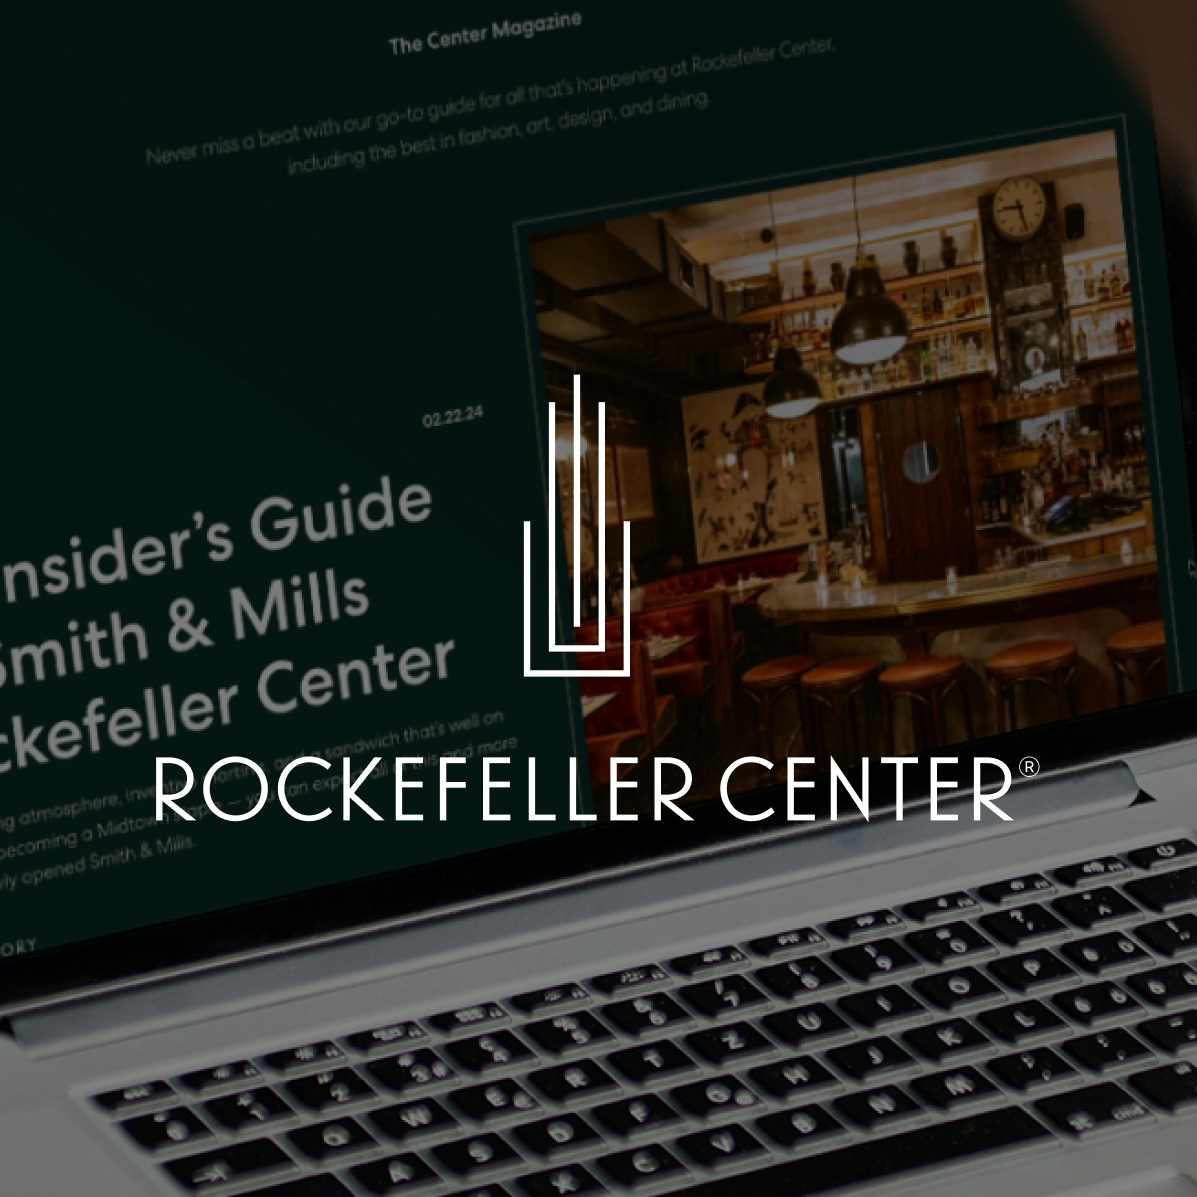 Designs we did for Rockefeller Center